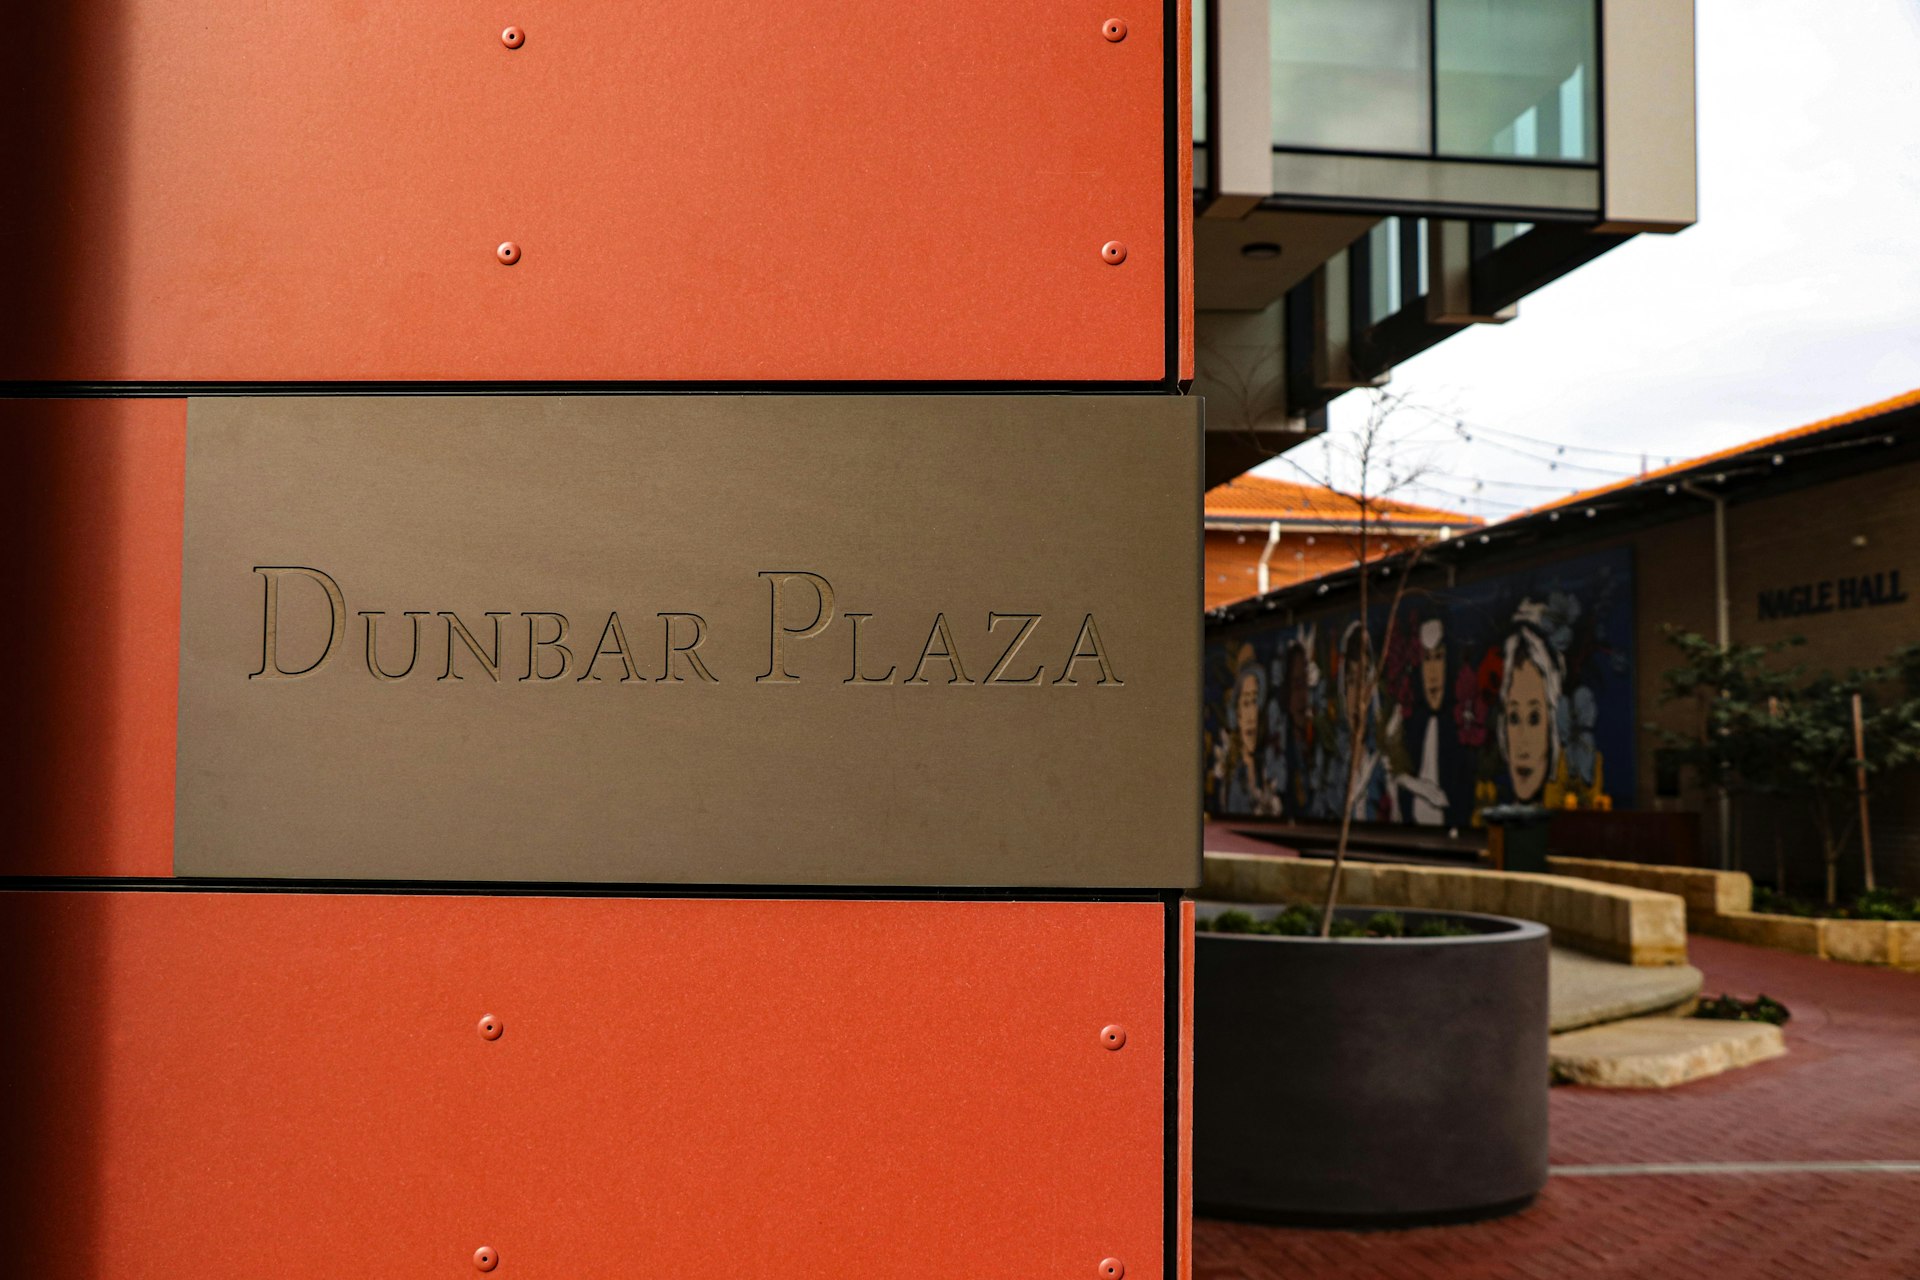 Cove Lane, Dunbar Plaza